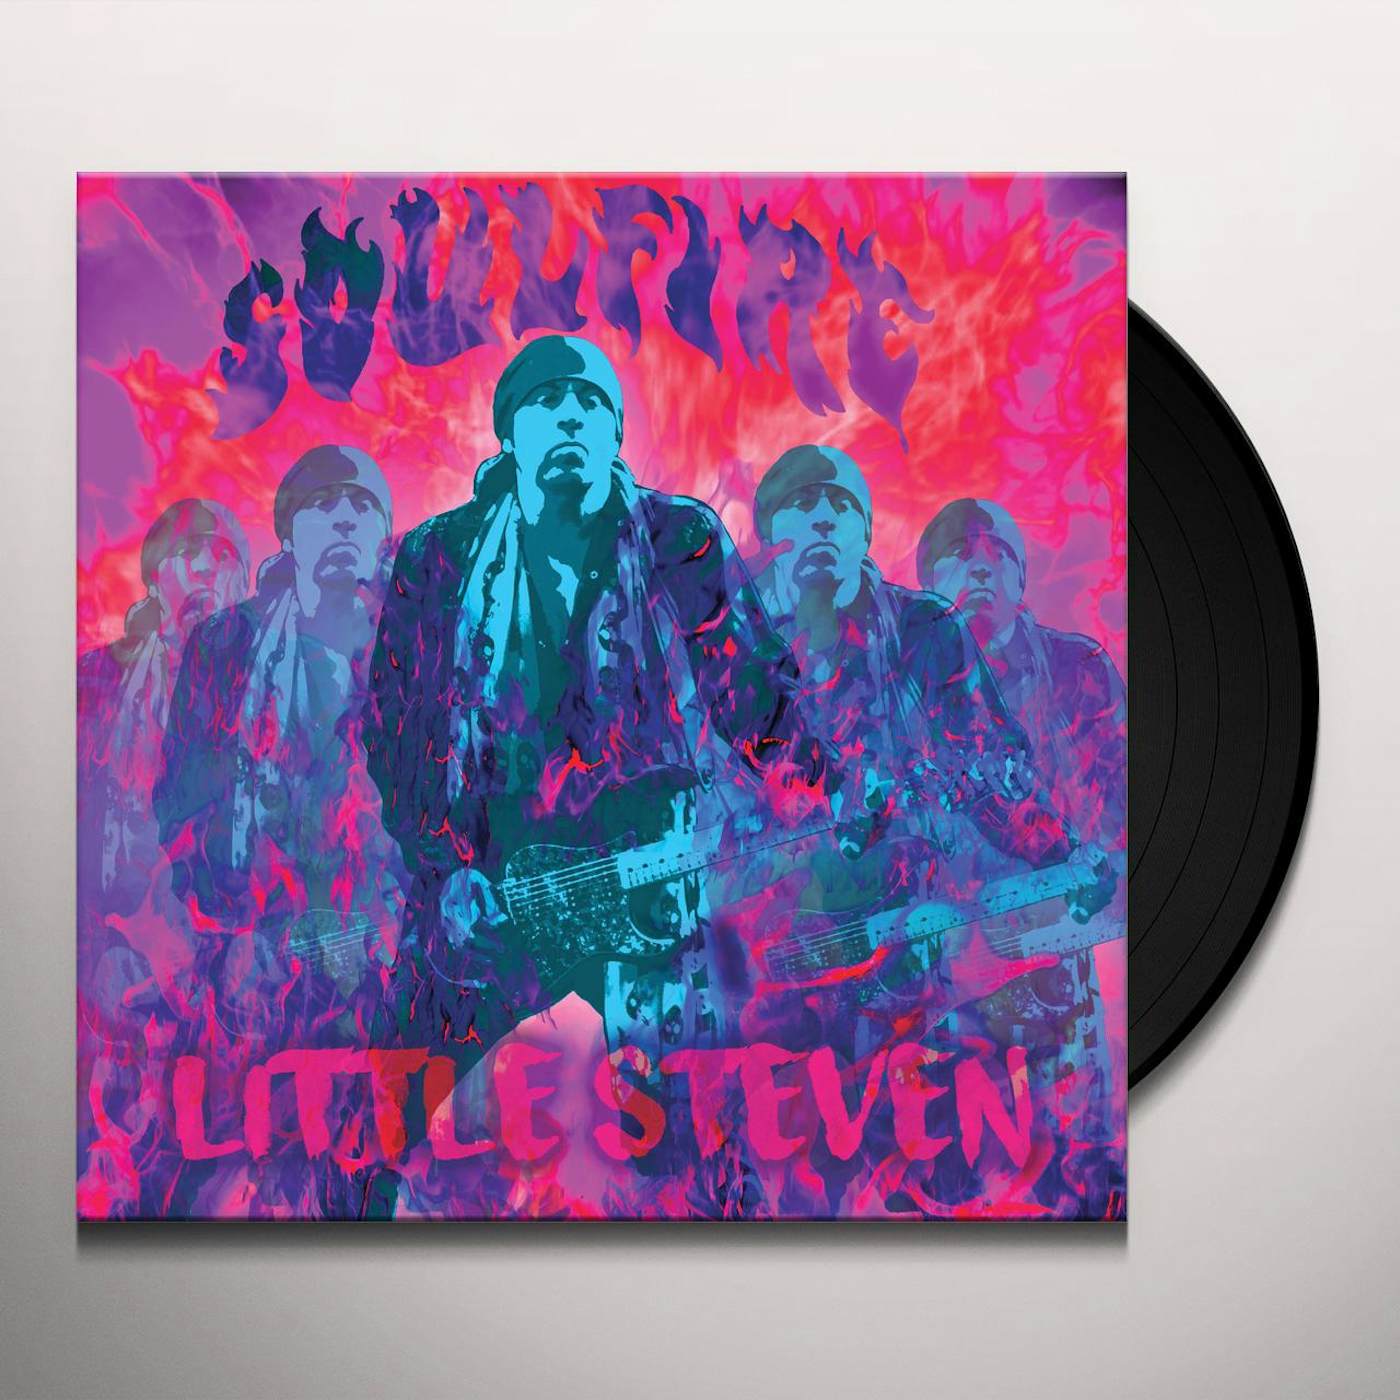 Little Steven Soulfire Vinyl Record